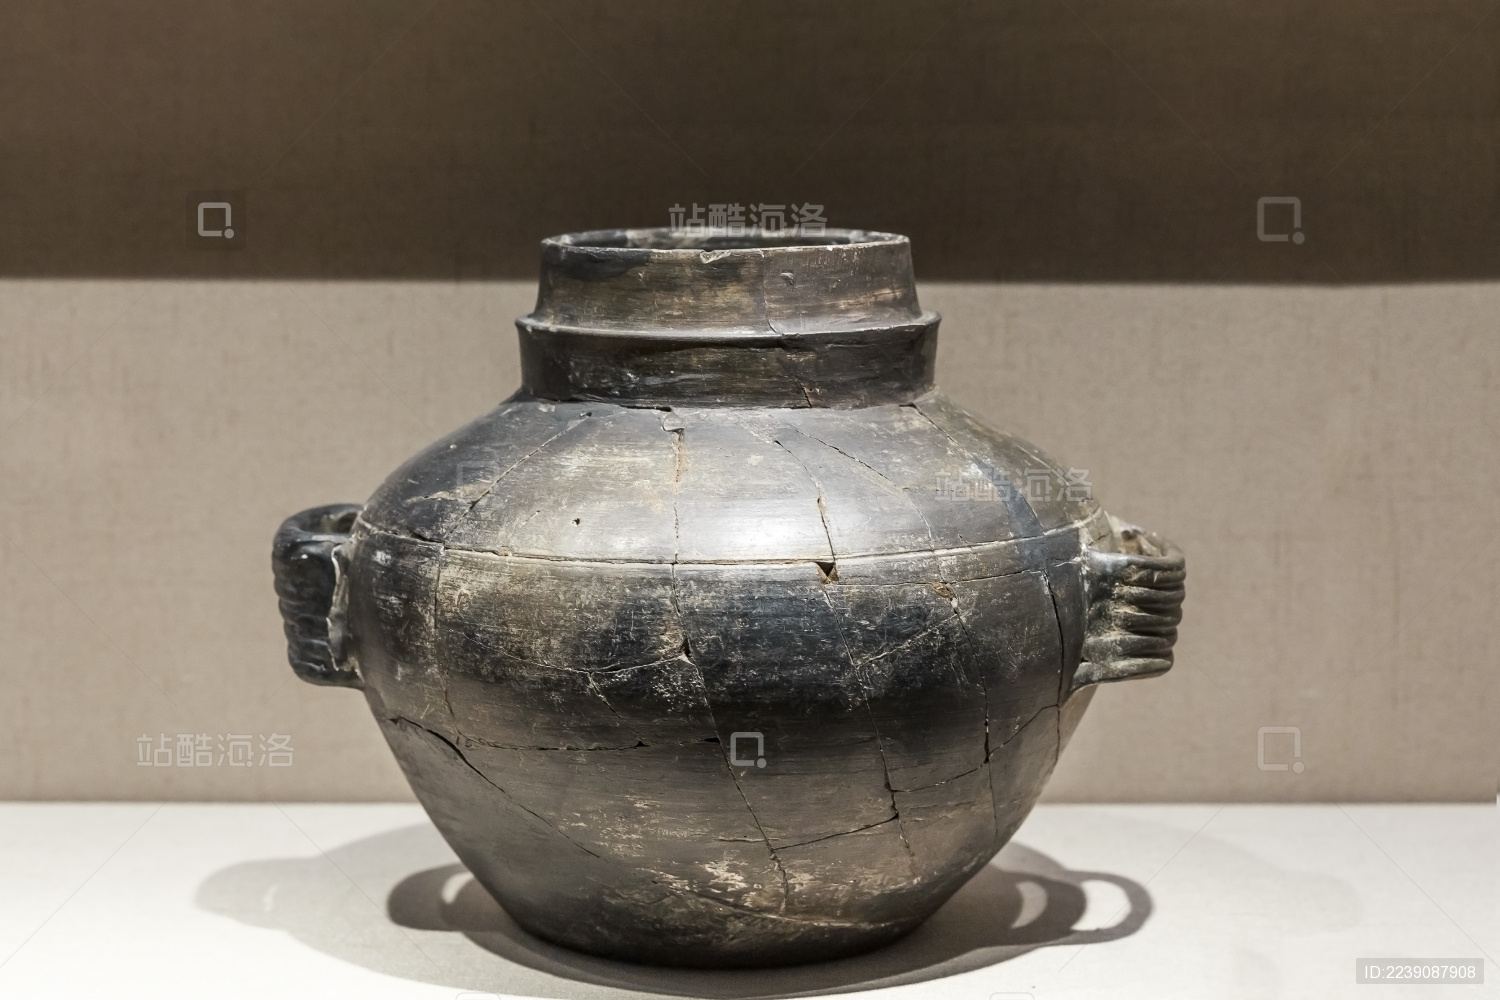 [图说]中国国家博物馆的稀世国宝们－－远古时期之龙山文化“薄胎黑陶高柄杯”与王字的来源“玉钺” - 知乎